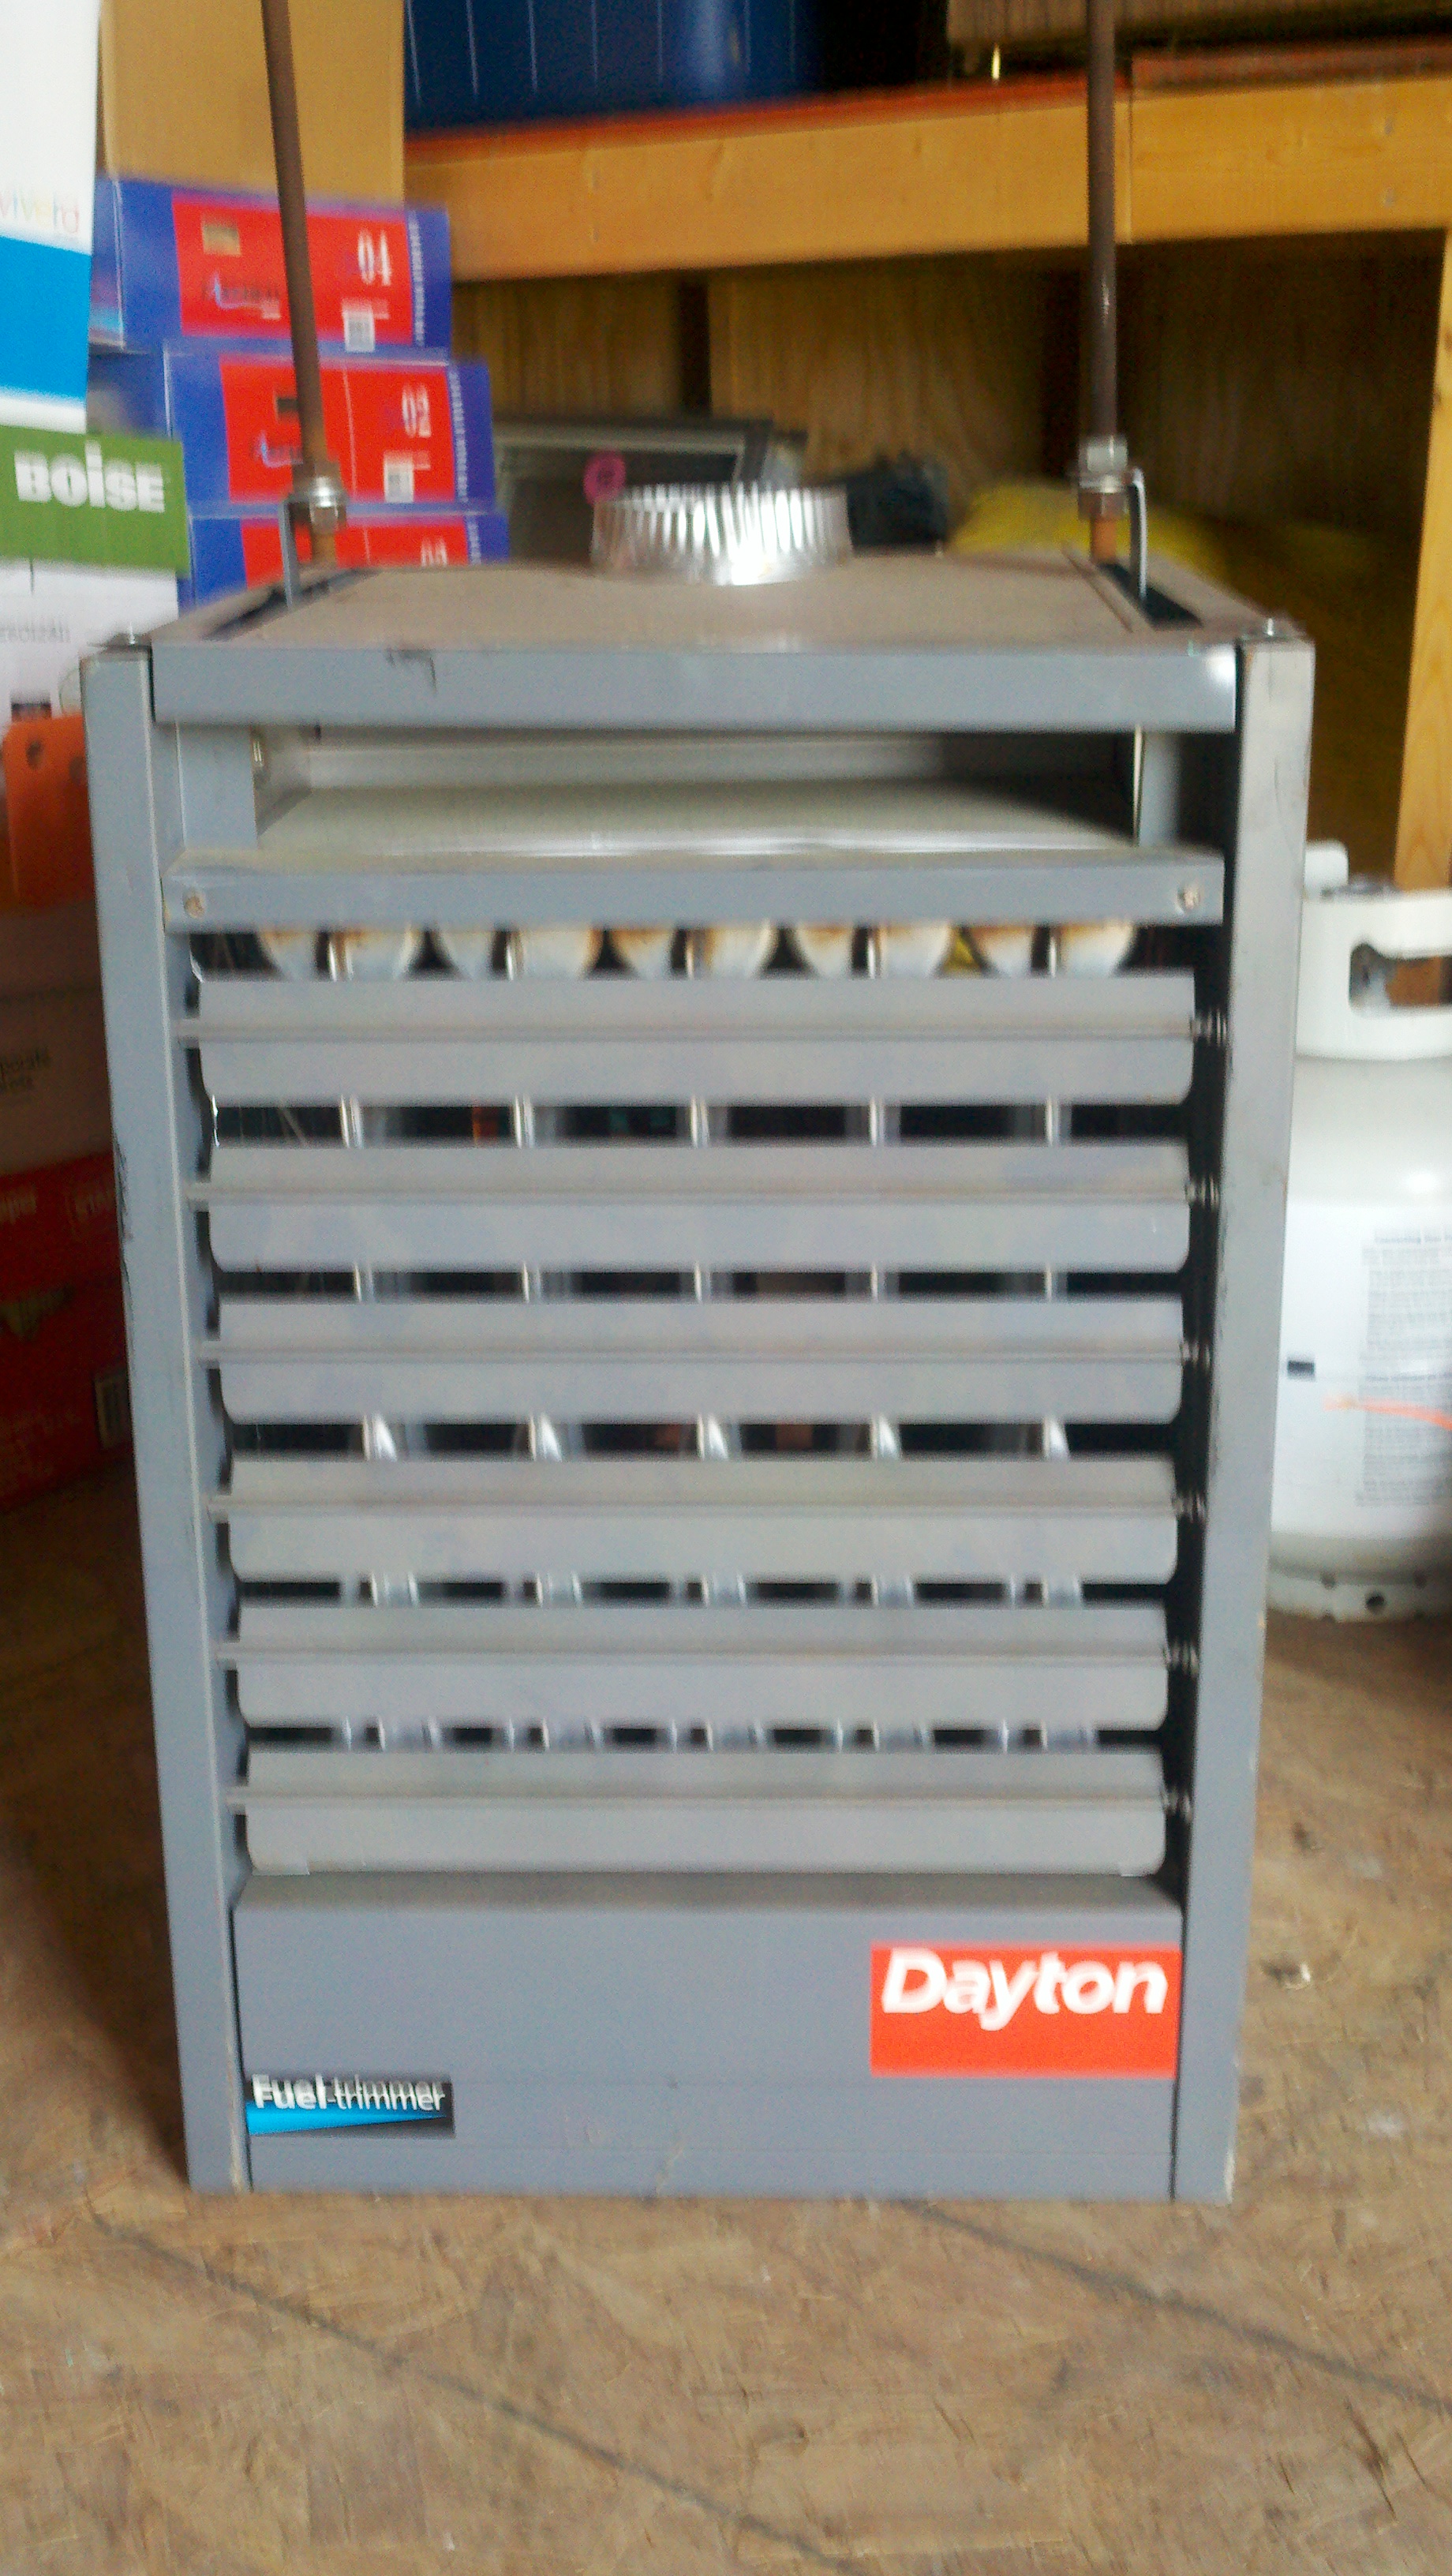 Dayton Fueltrimmer Garage Heater